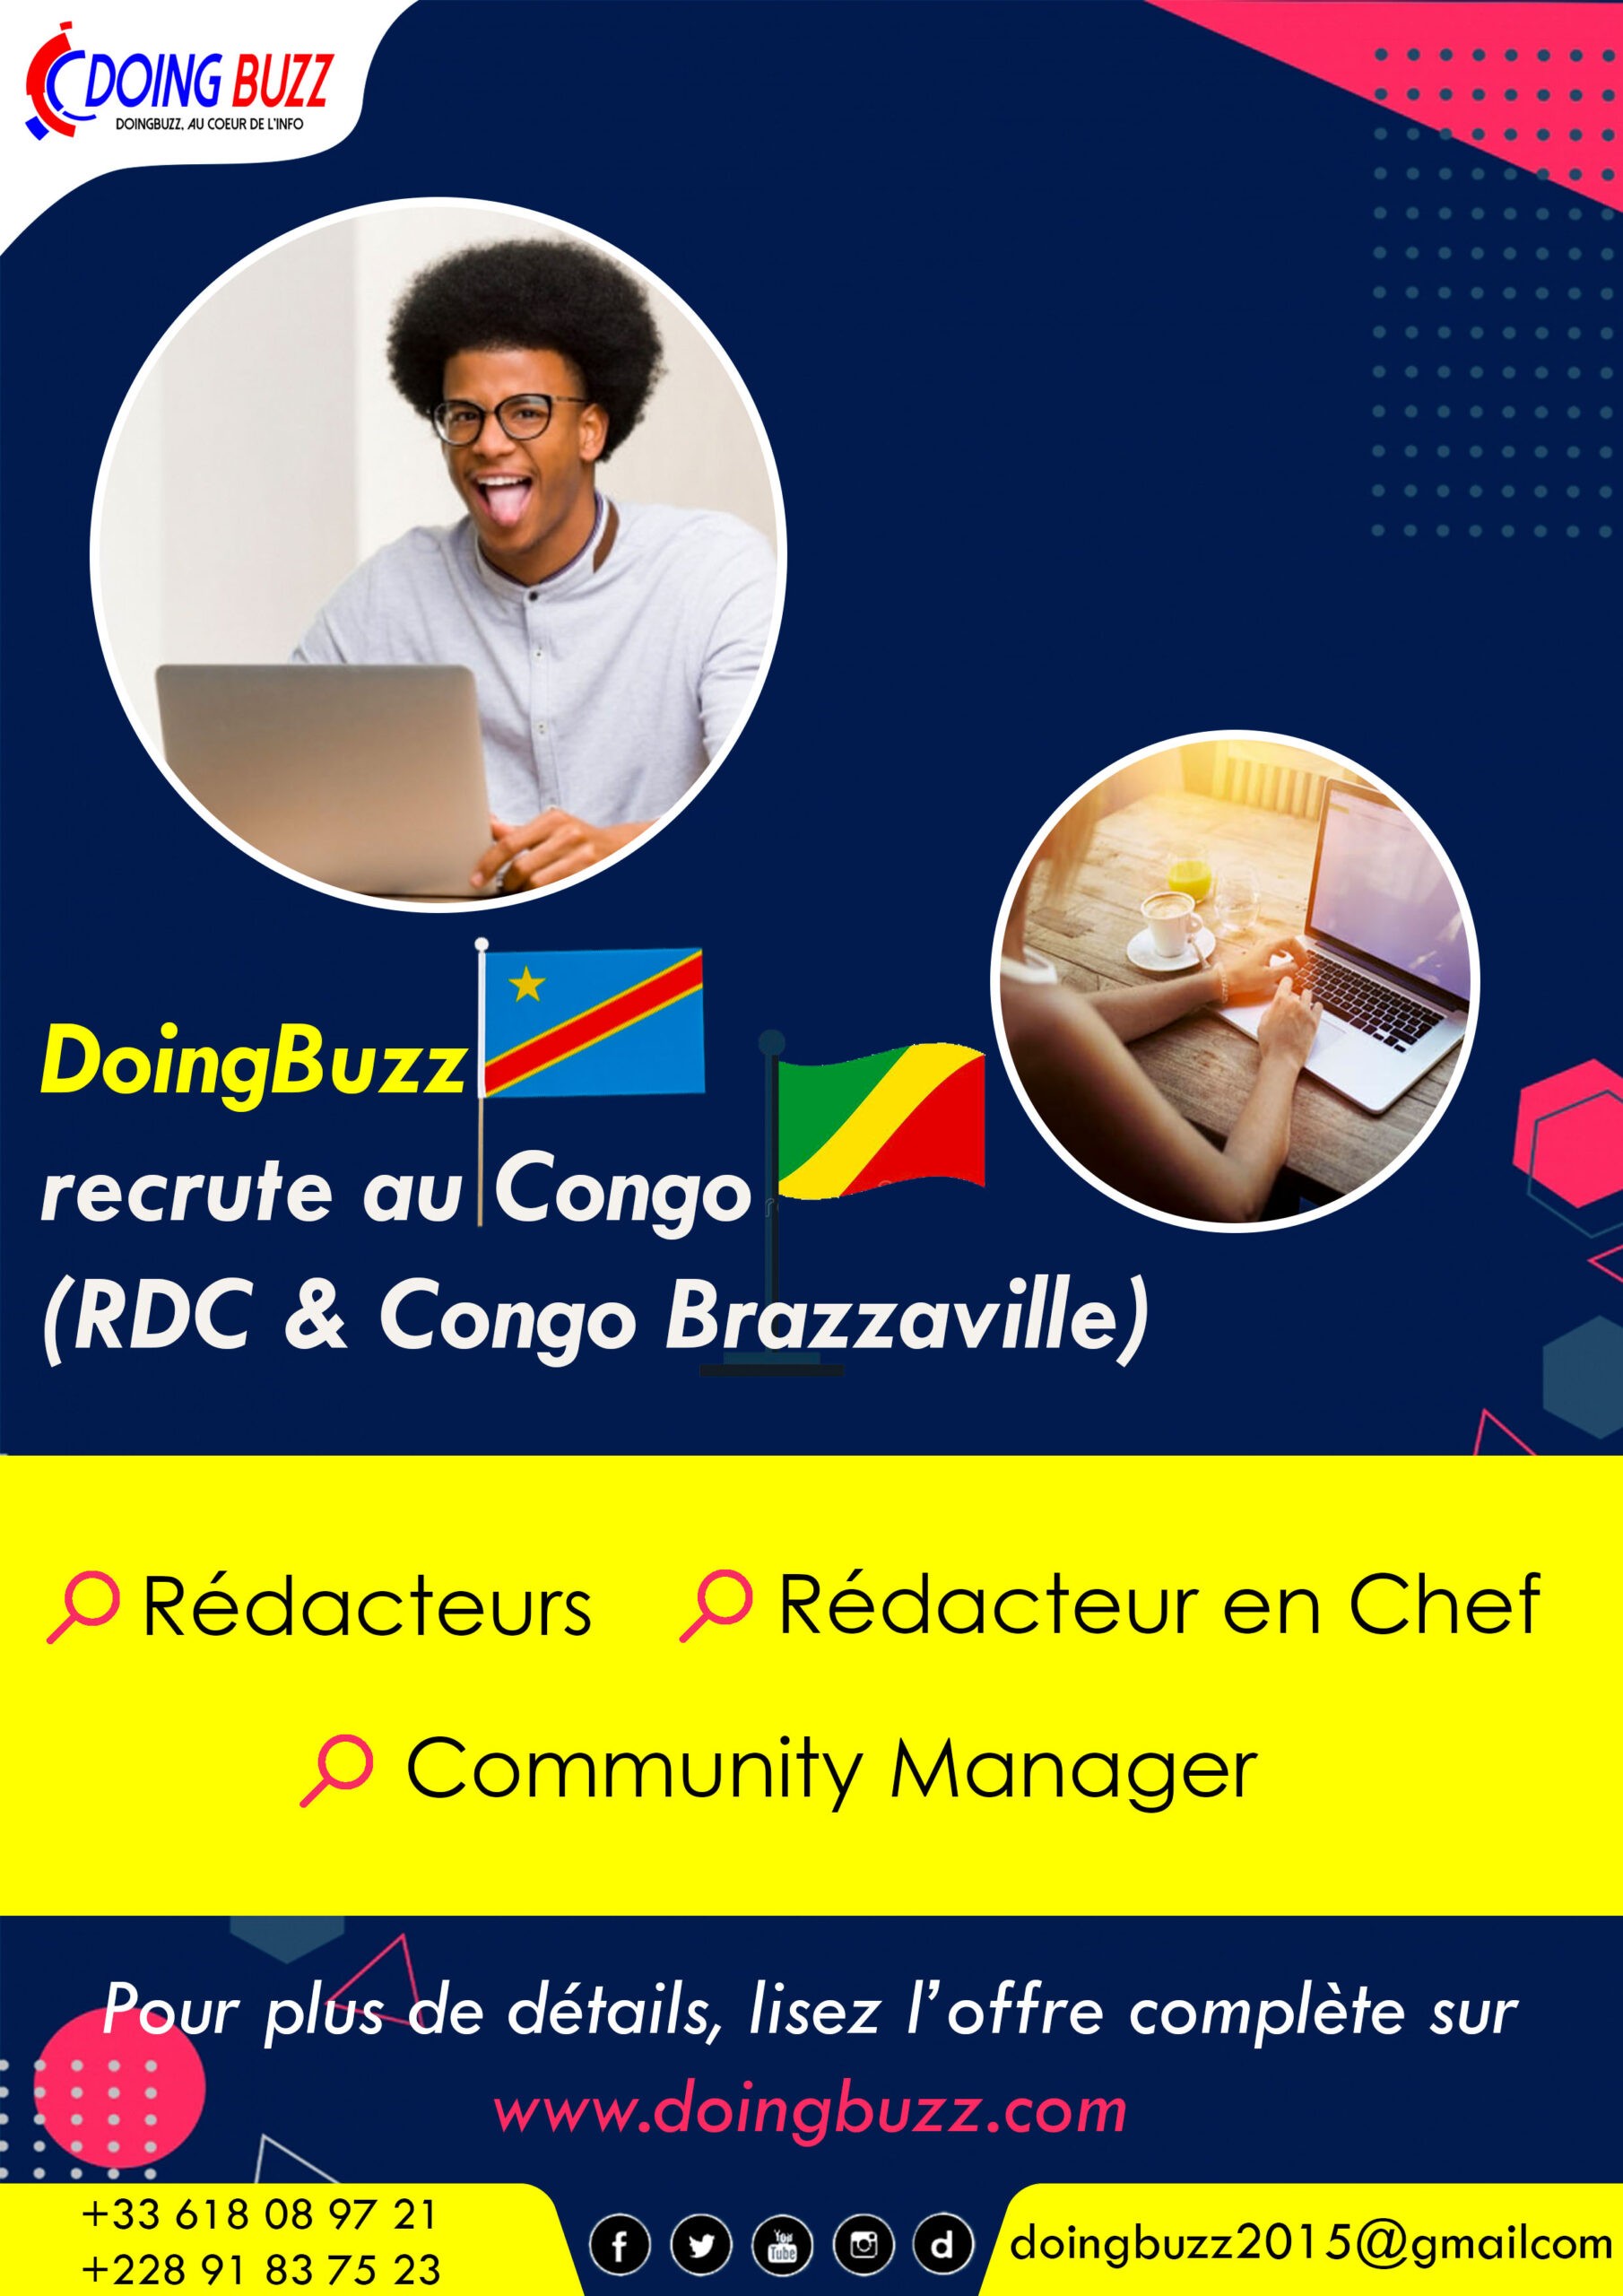 Doingbuzz.com recrute pour plusieurs postes au Congo